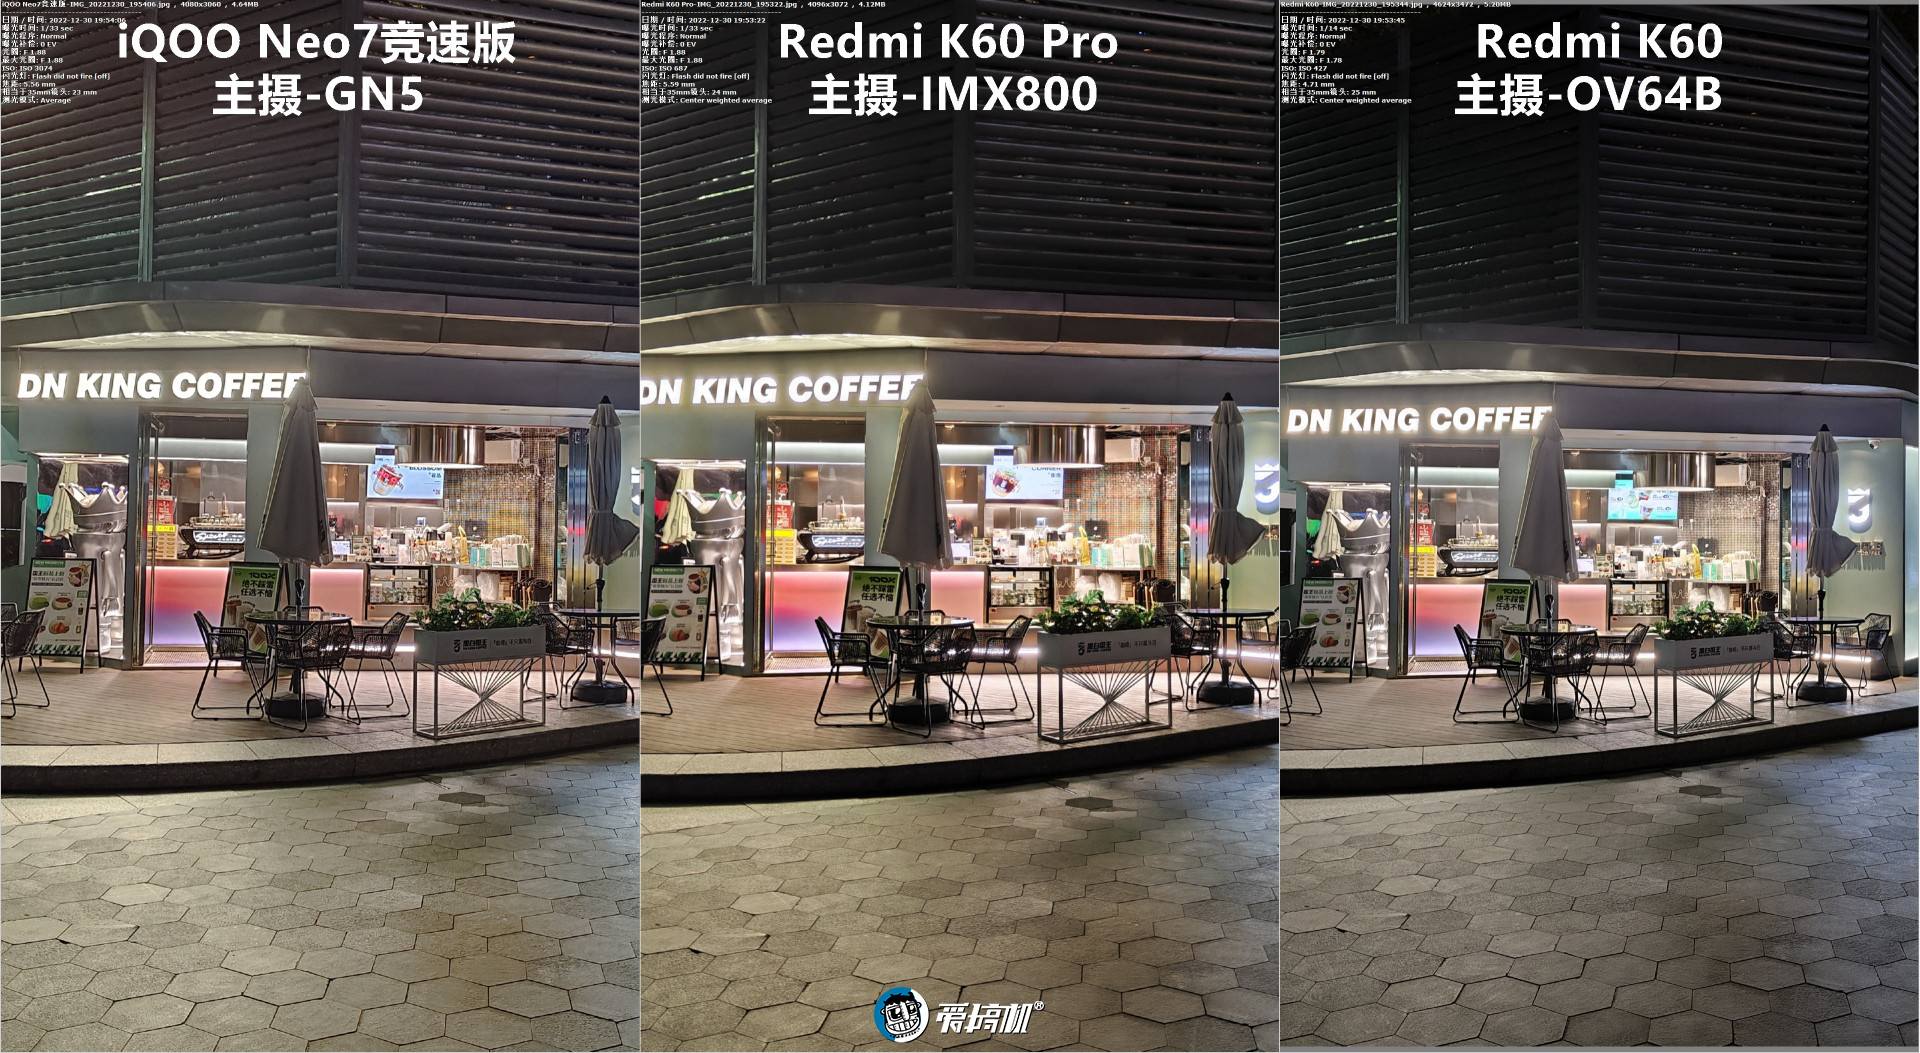 变贵也变强了，Redmi K60 Pro评测：3299元起的二代骁龙8